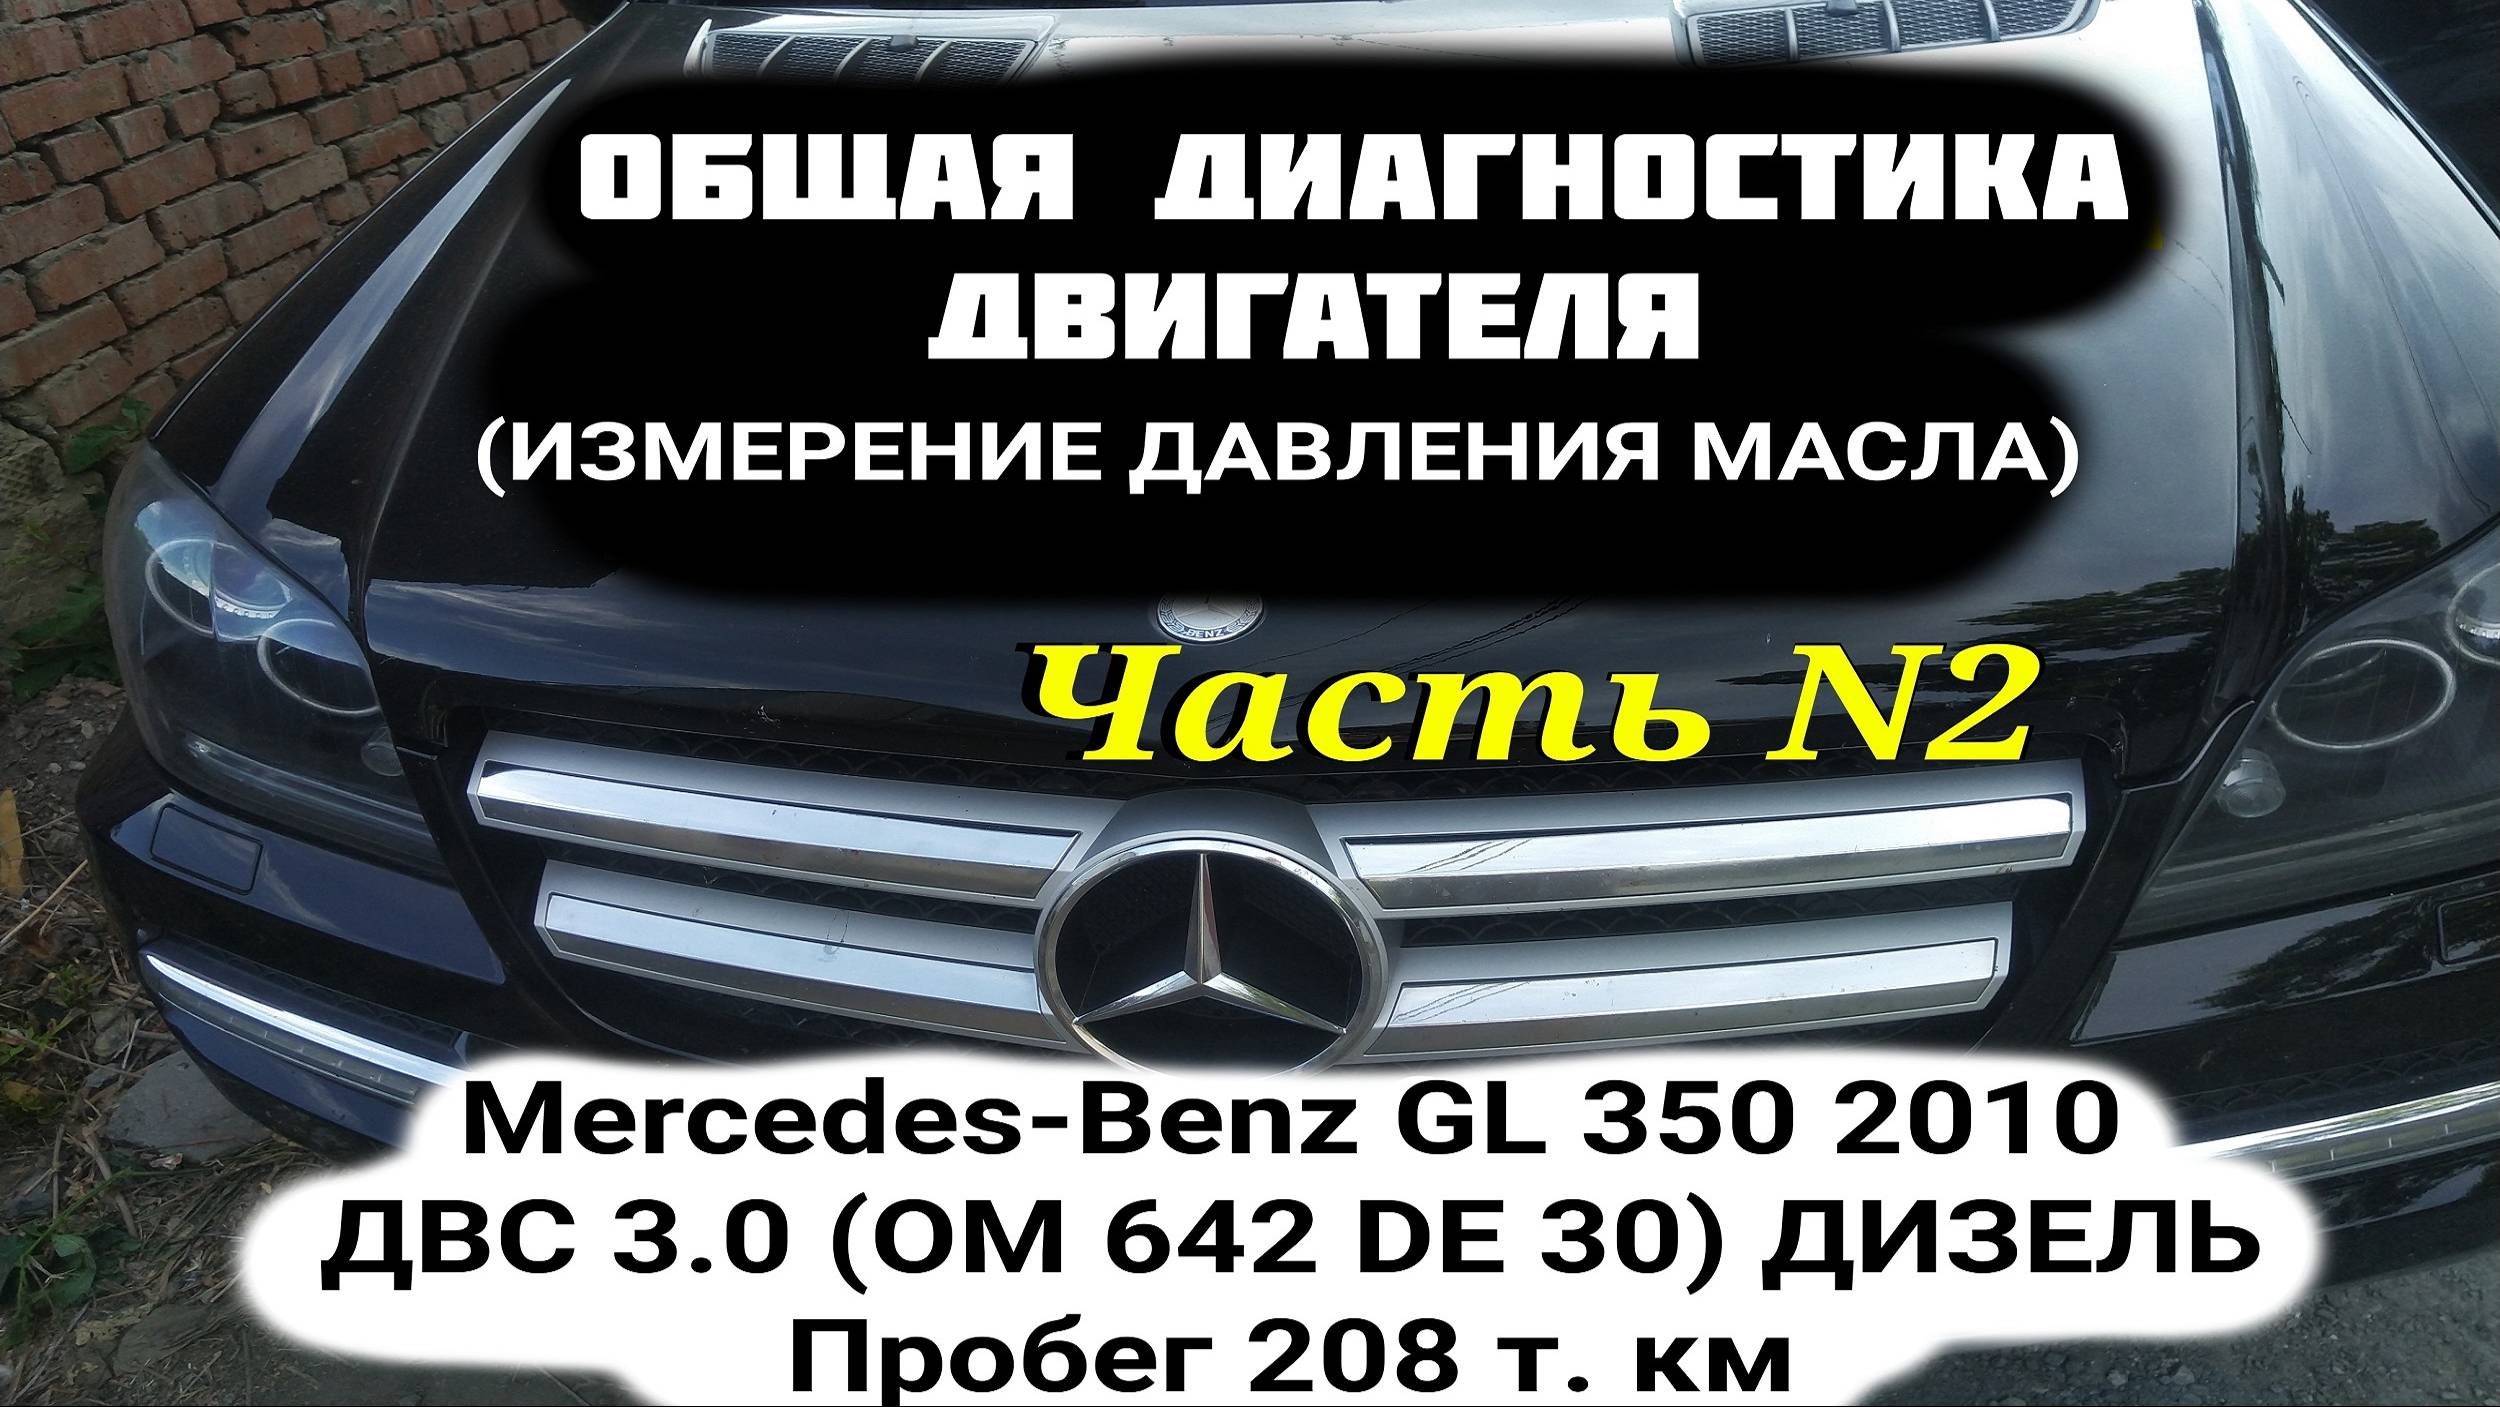 Диагностика  Mercedes-Benz GL 350 2010 ДВС 3.0. ДВС OM 642 дизель. Замер давления масла. Диагностика